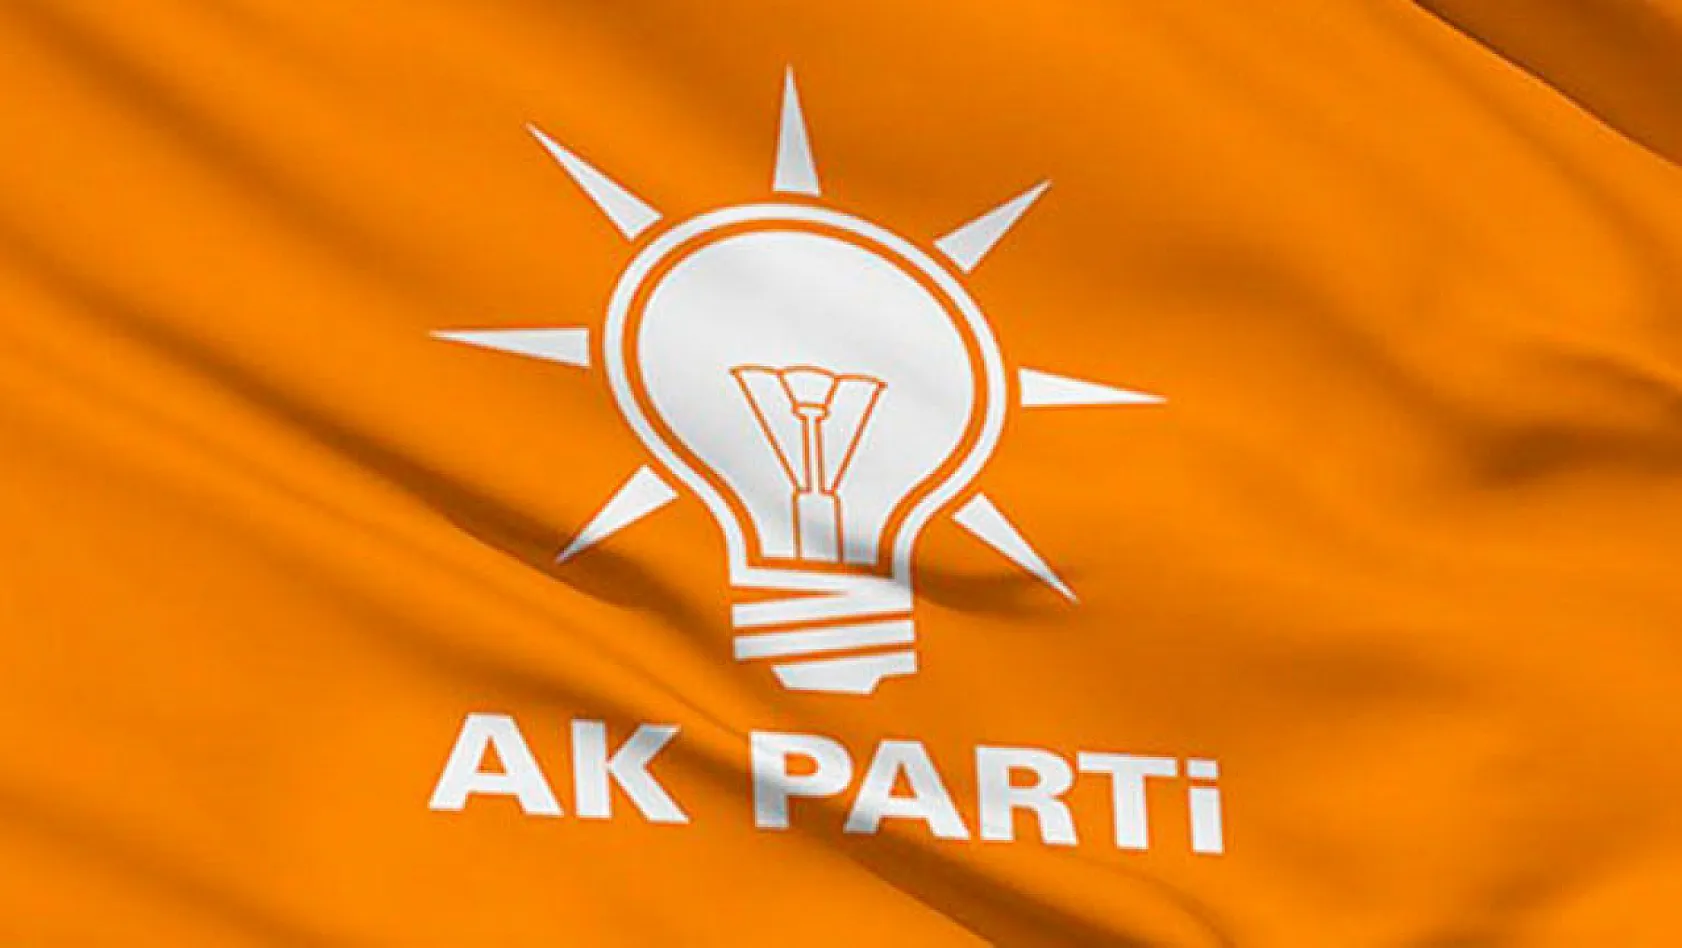 AK Partili eski vekil partiden kendisini kiminin ihraç ettirdiğini açıkladı!